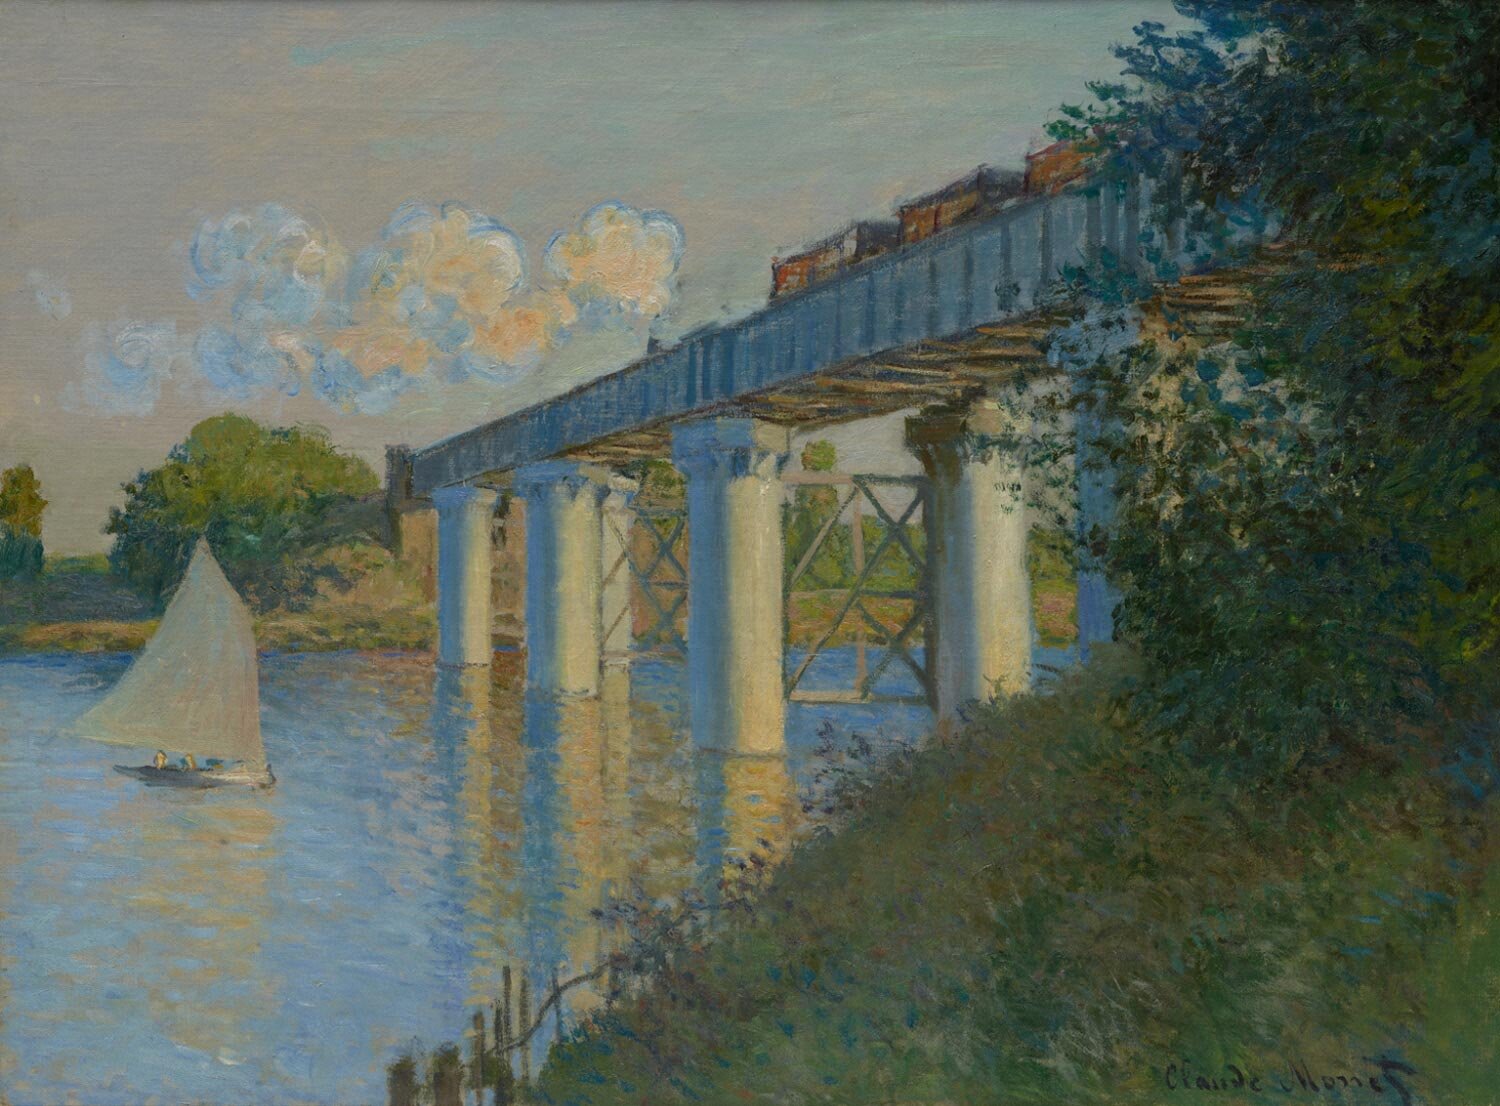 Claude Monet, Railroad Bridge at Argenteuil, 1873